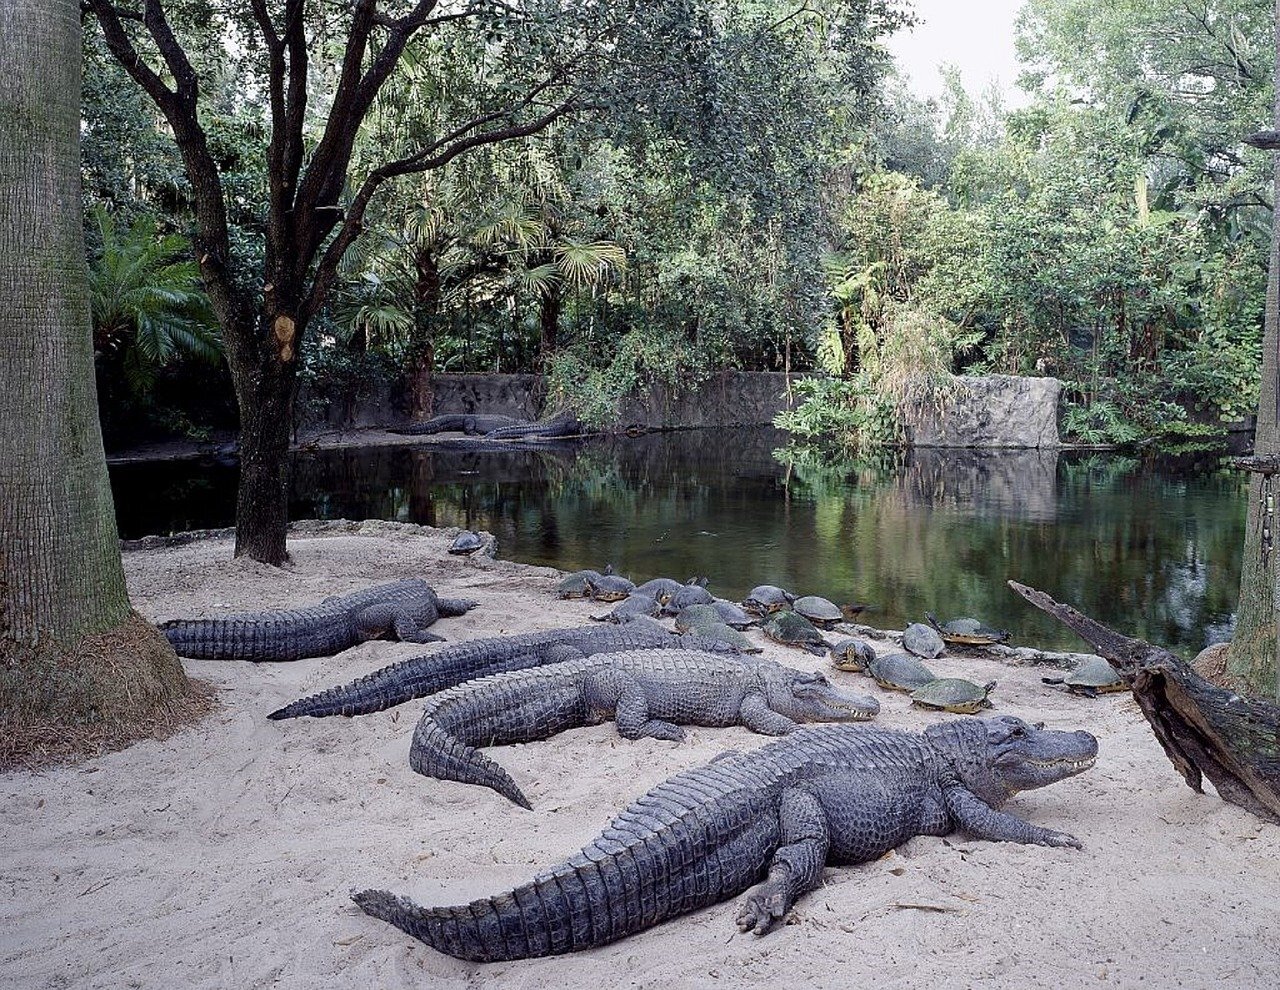 alligators-754933_1280.jpg